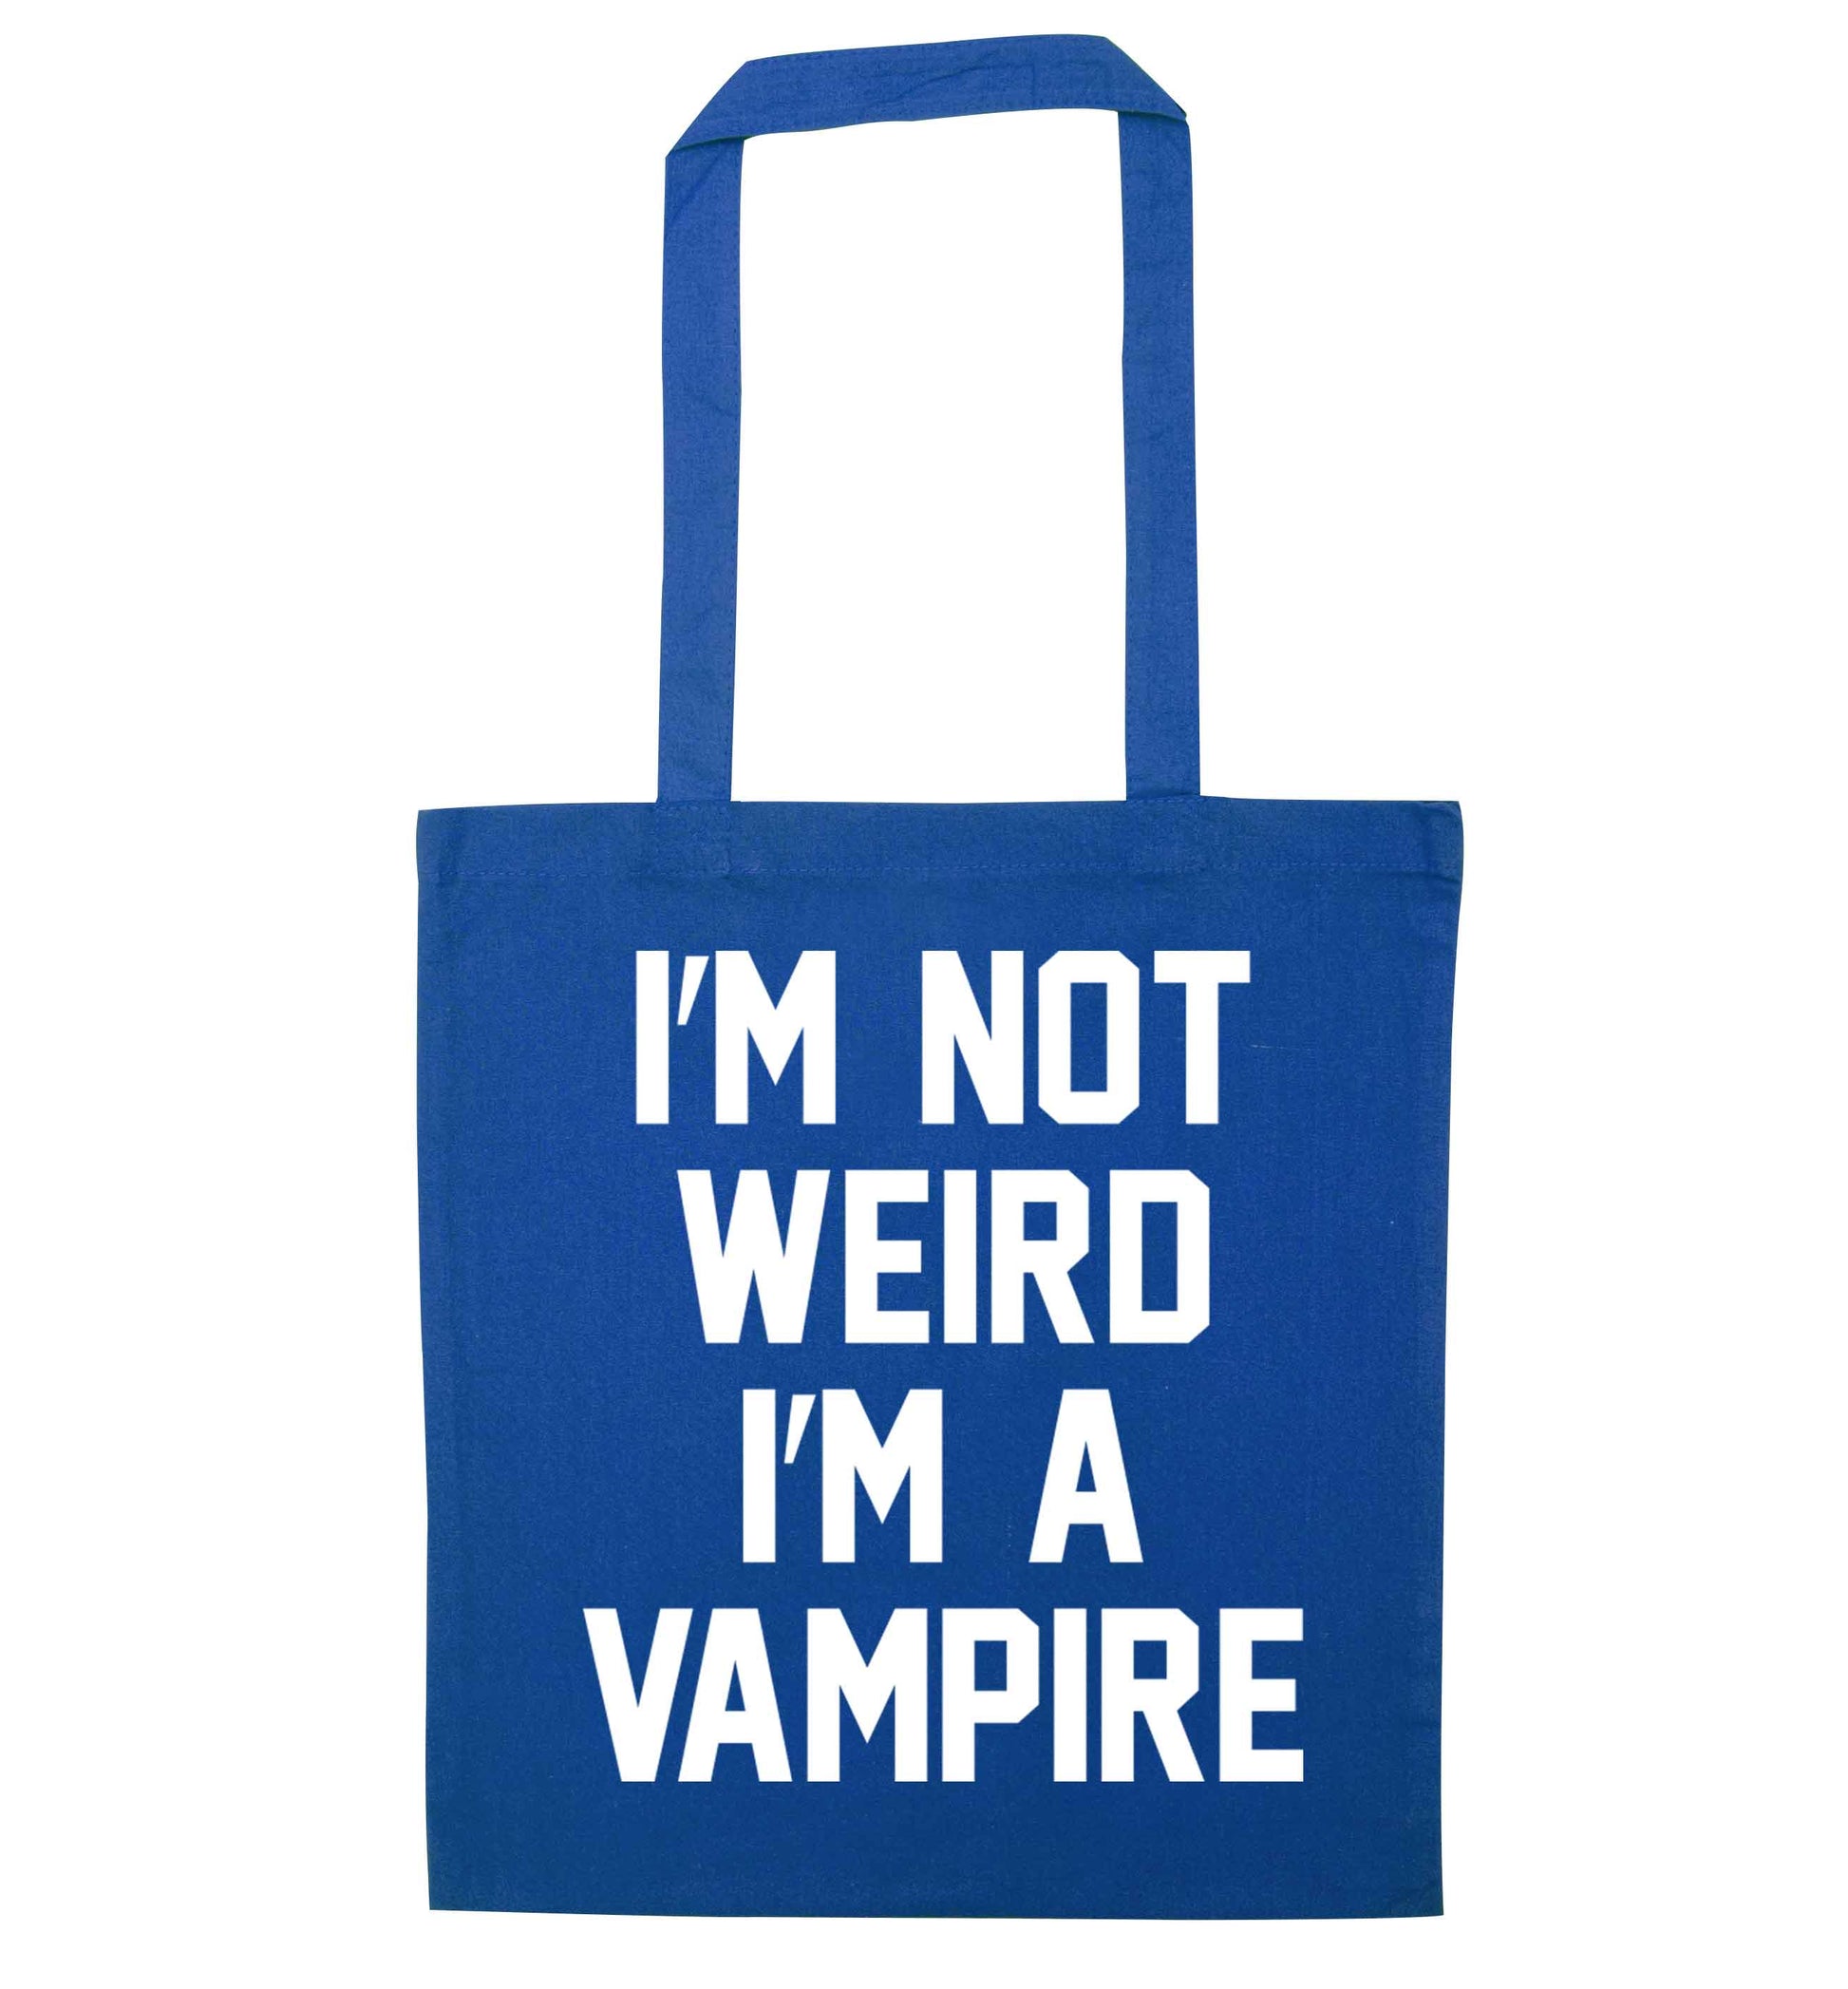 I'm not weird I'm a vampire blue tote bag